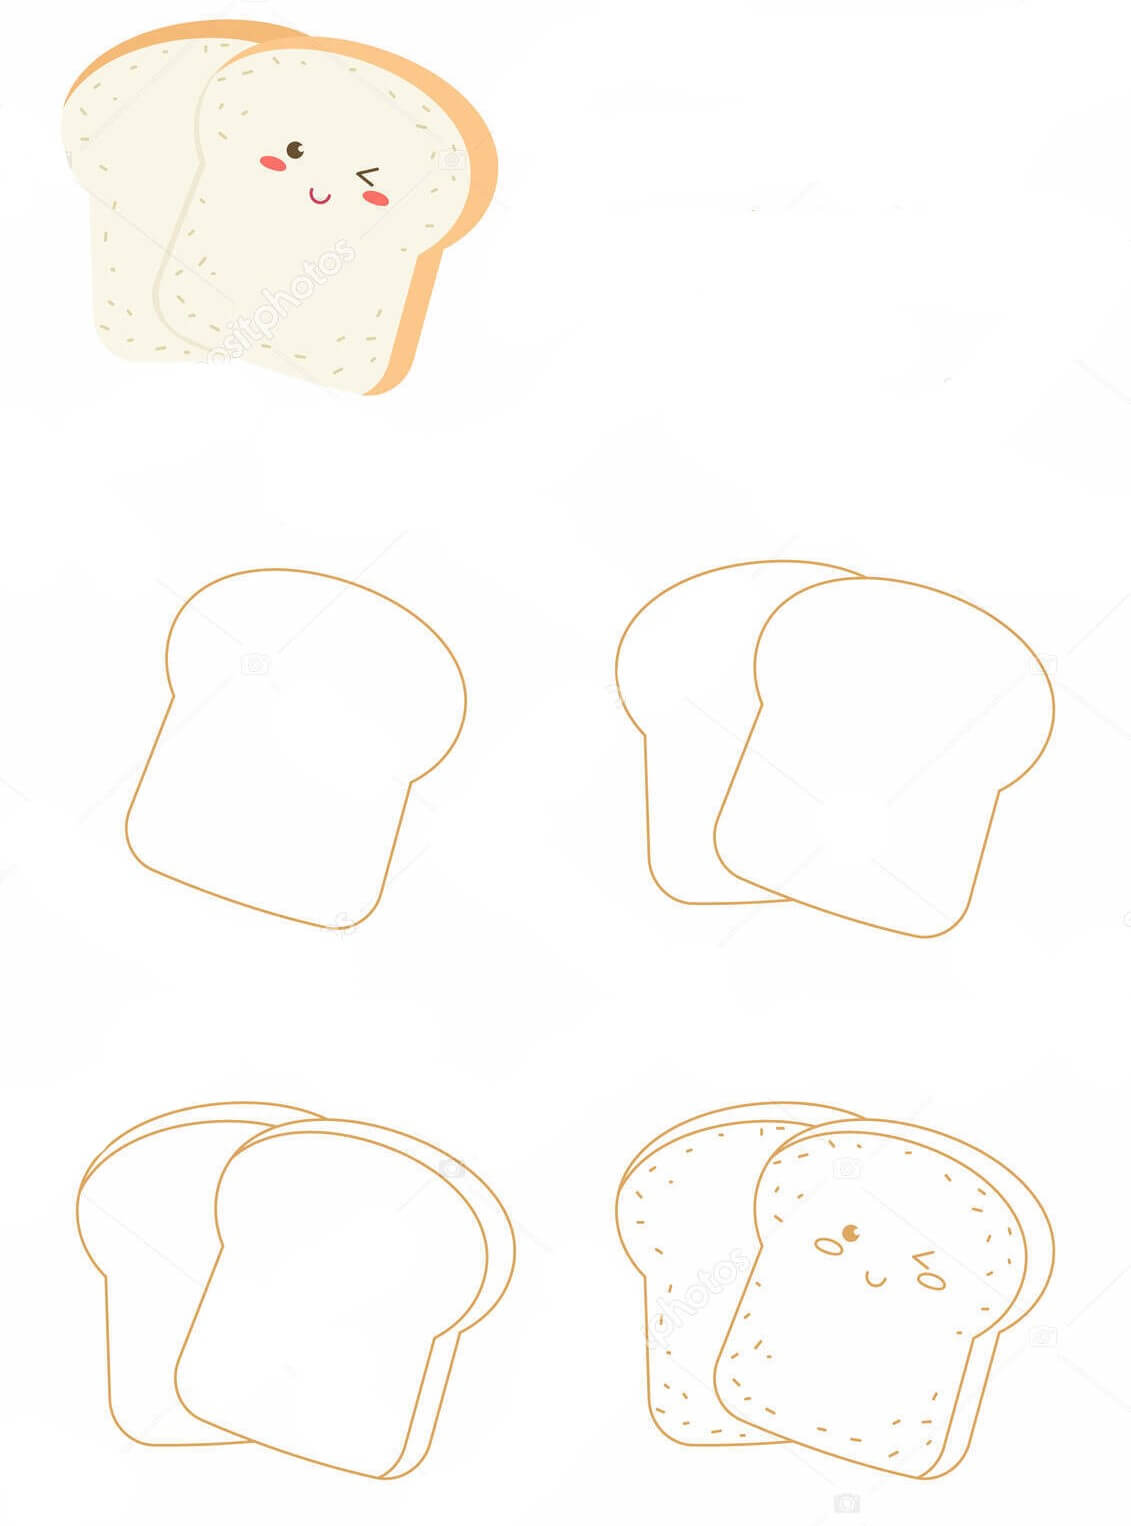 Brotidee (7) zeichnen ideen